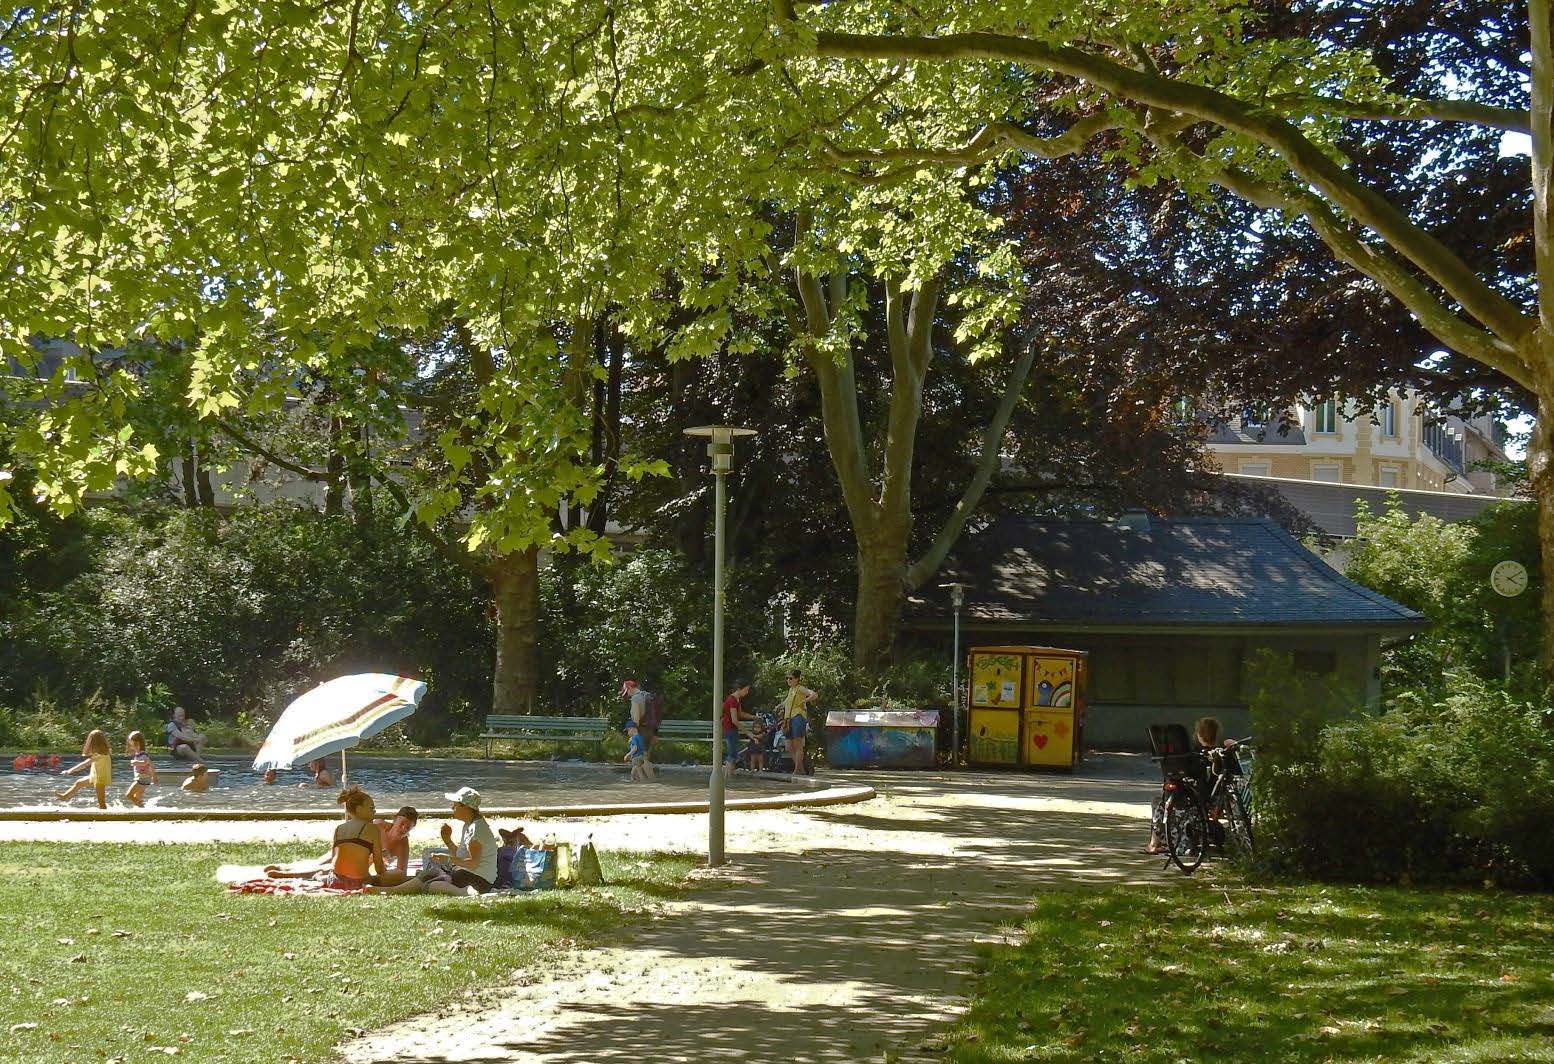 Besuchende im Sihlhölzlipark. Im Hintergrund das Planschbecken und das noch unrenovierte Kioskgebäude im Sommer 2020 (Foto: D. Sauter, 2020).